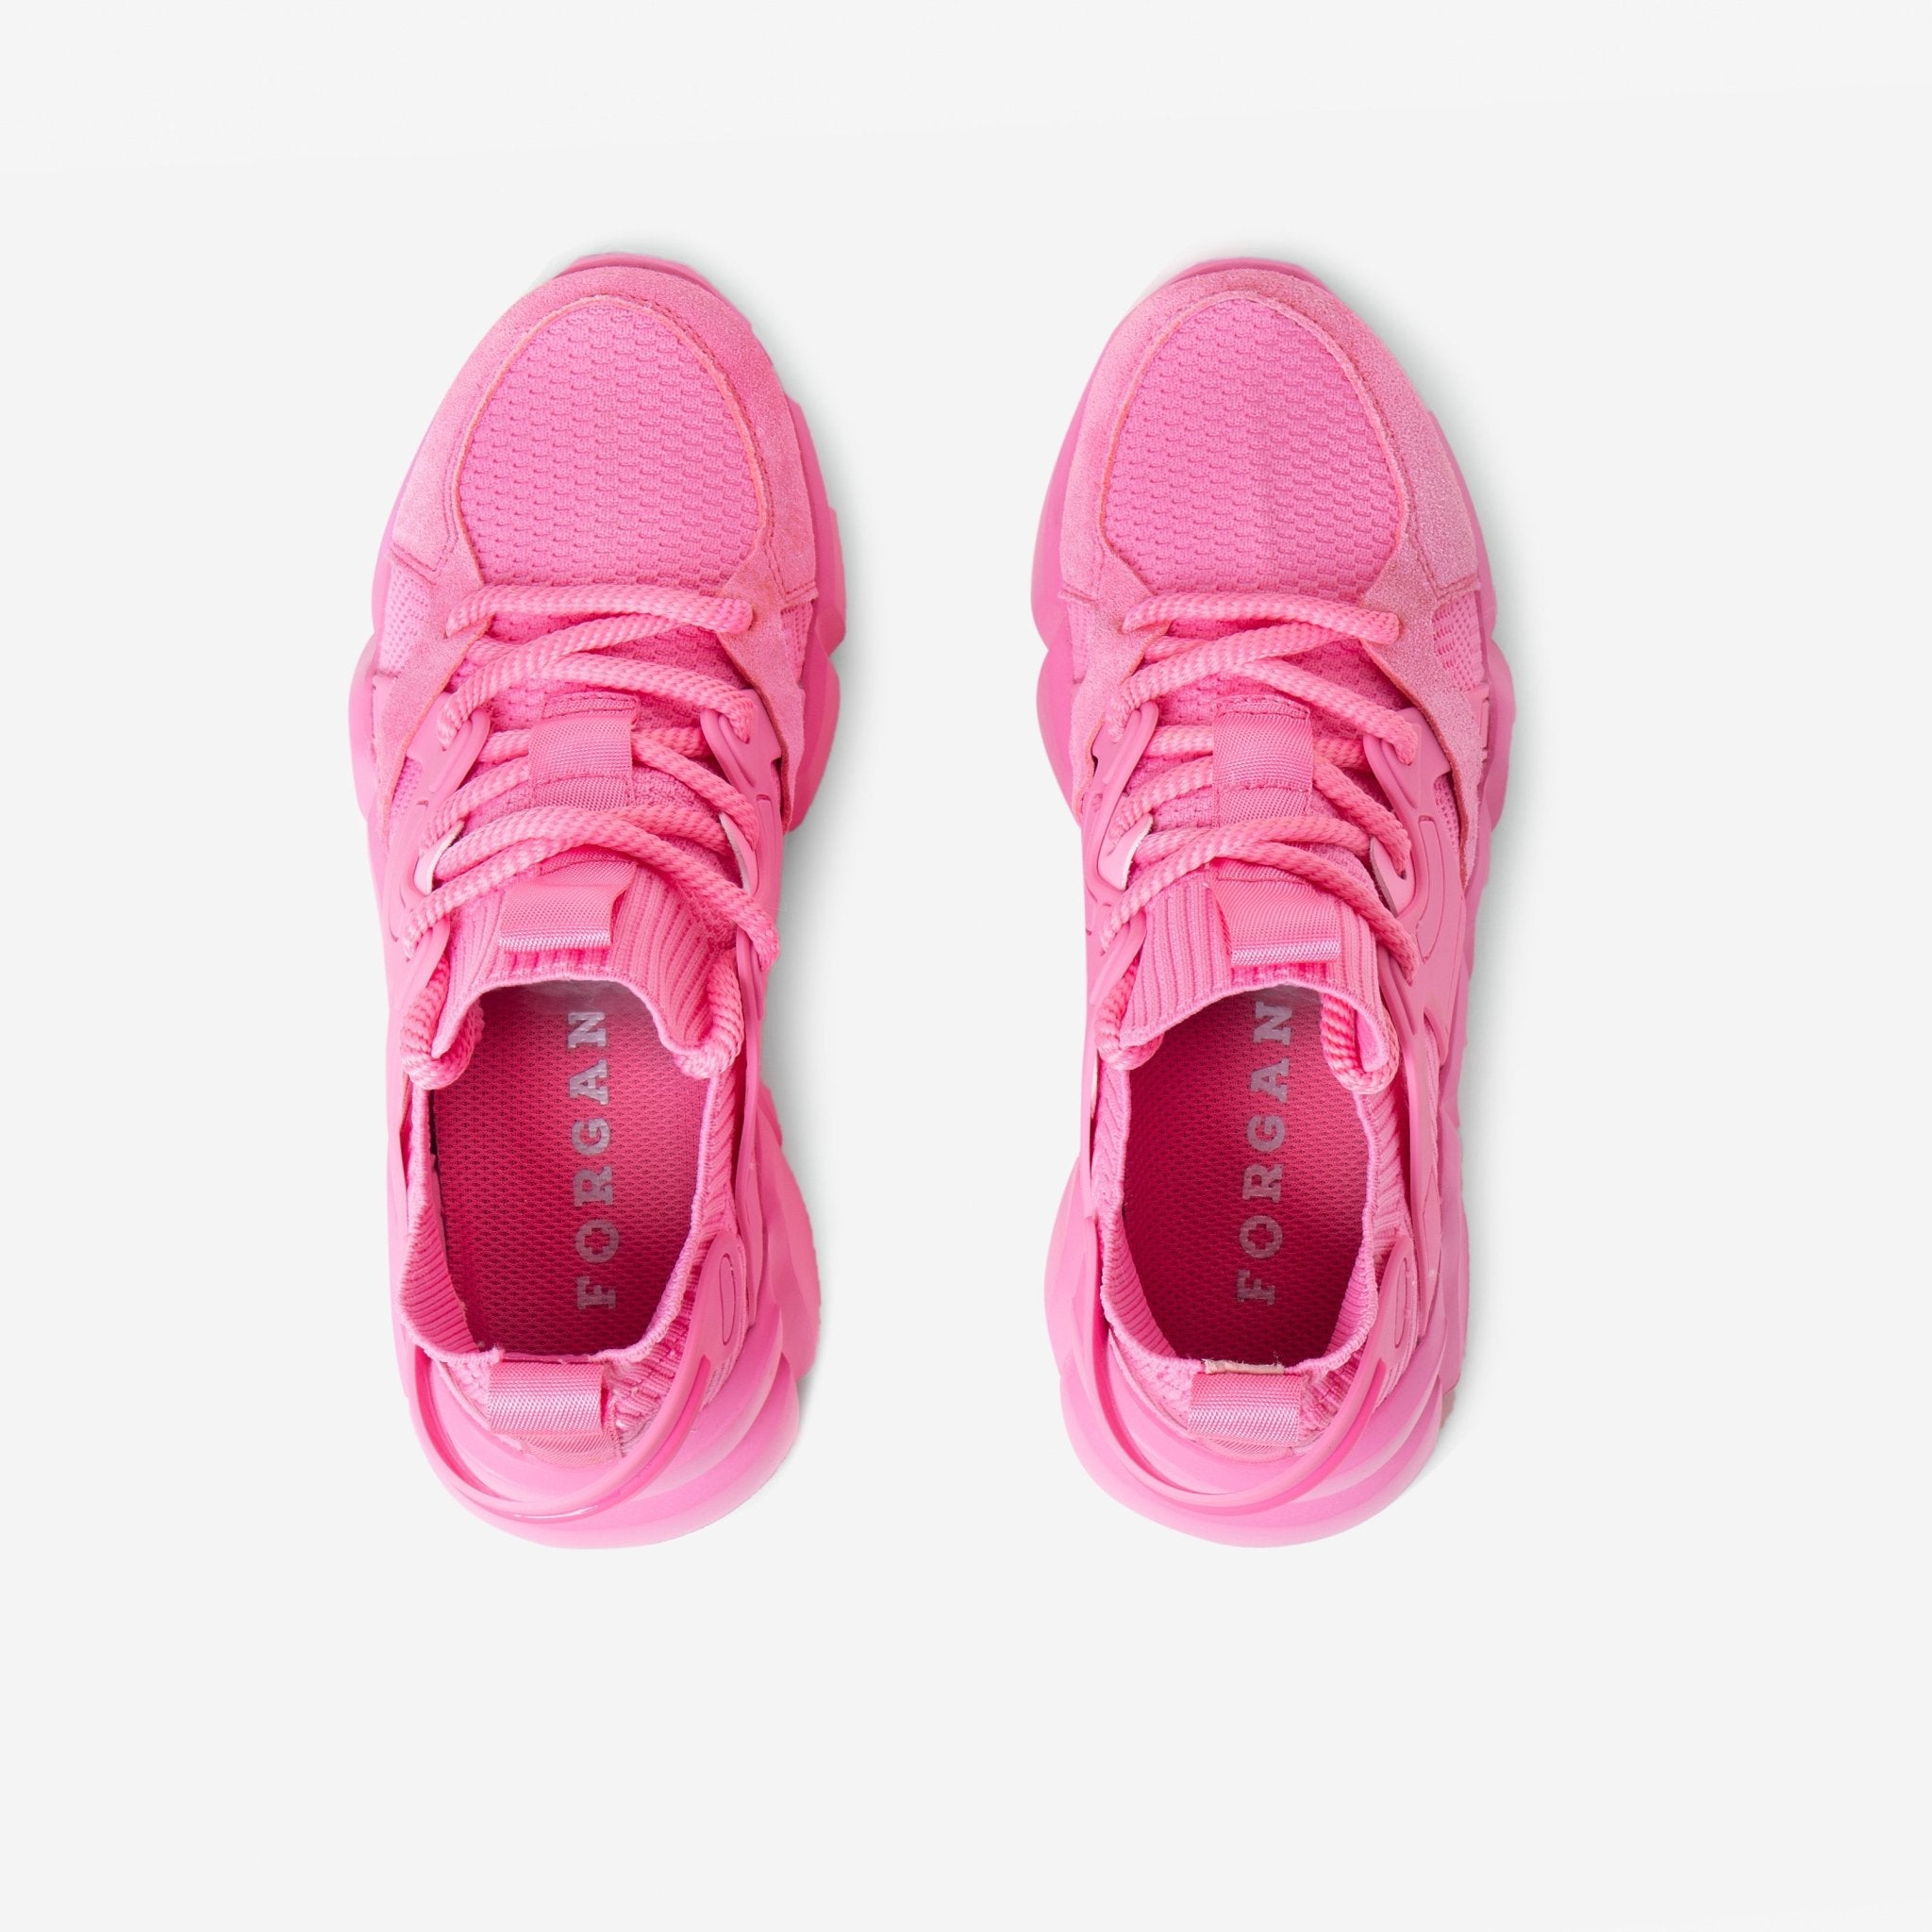 Gano Z Pink Sneaker [PRE ORDER] – Forgano